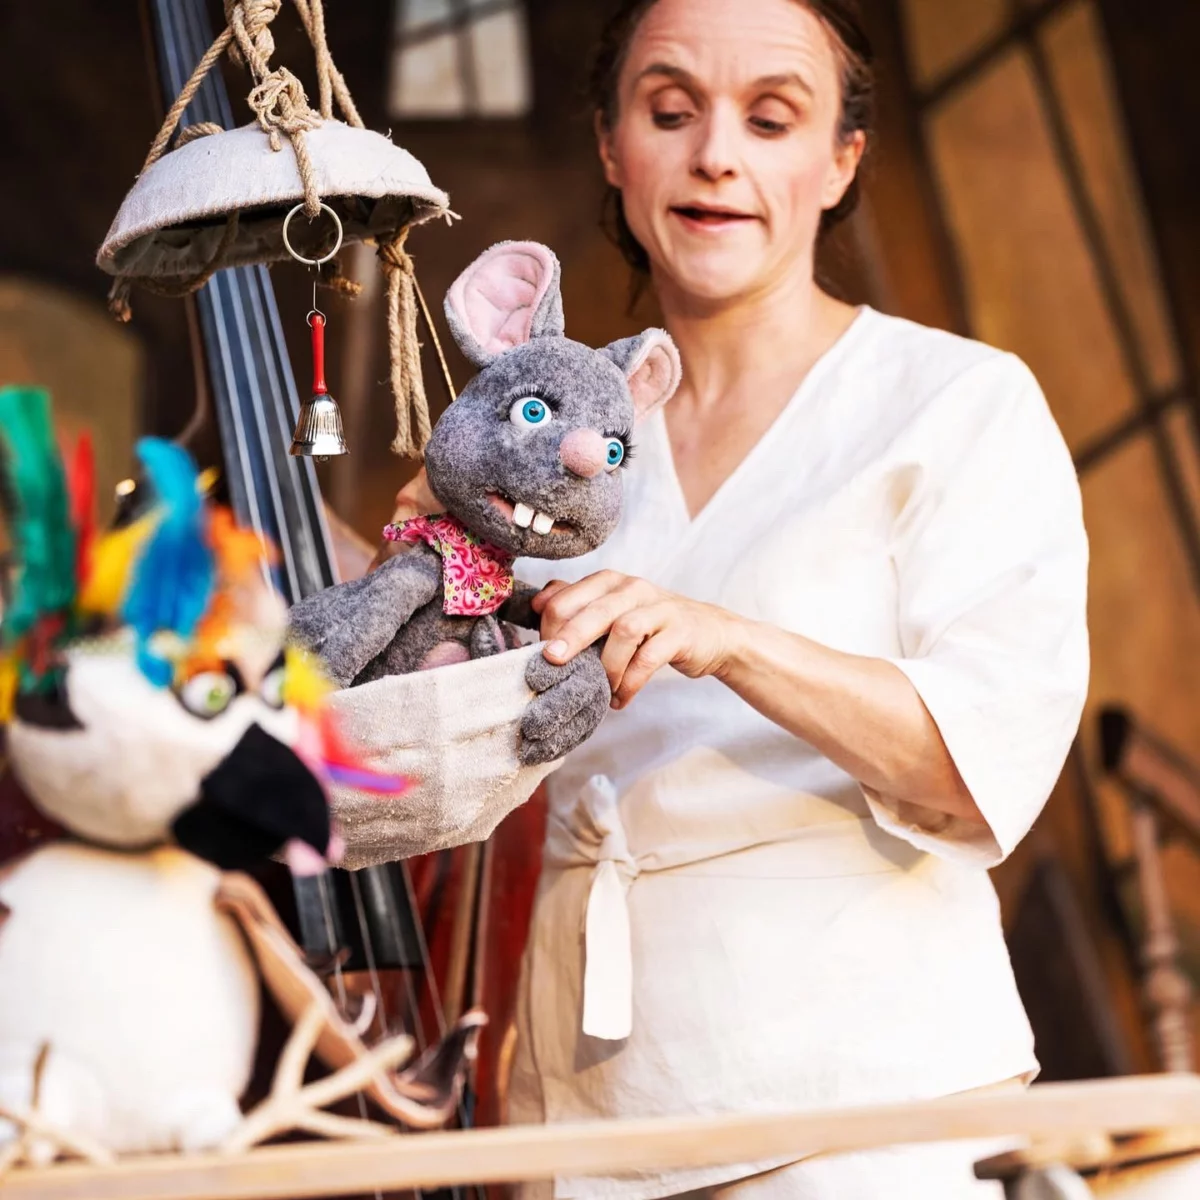 Eine Figurentheaterspielerin bedient eine graue Mauspuppe, die vor ihr aus einer Schale herausschaut.